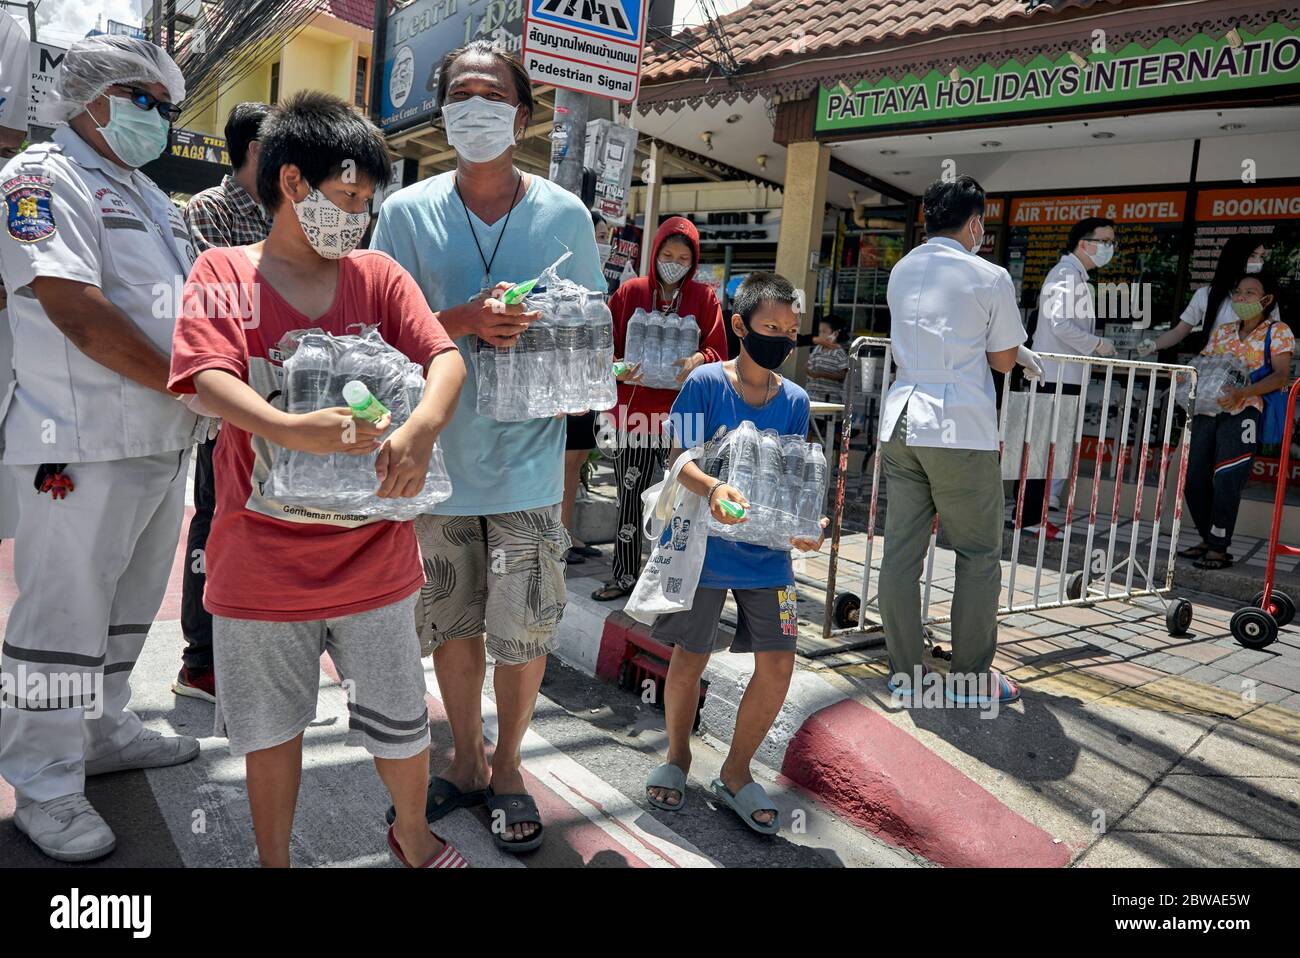 Covid-19 alimentaire. Distribution gratuite de nourriture aux personnes dans le besoin en raison de la perte de revenus du coronavirus financé par les entreprises locales à Pattaya Thaïlande Asie Banque D'Images